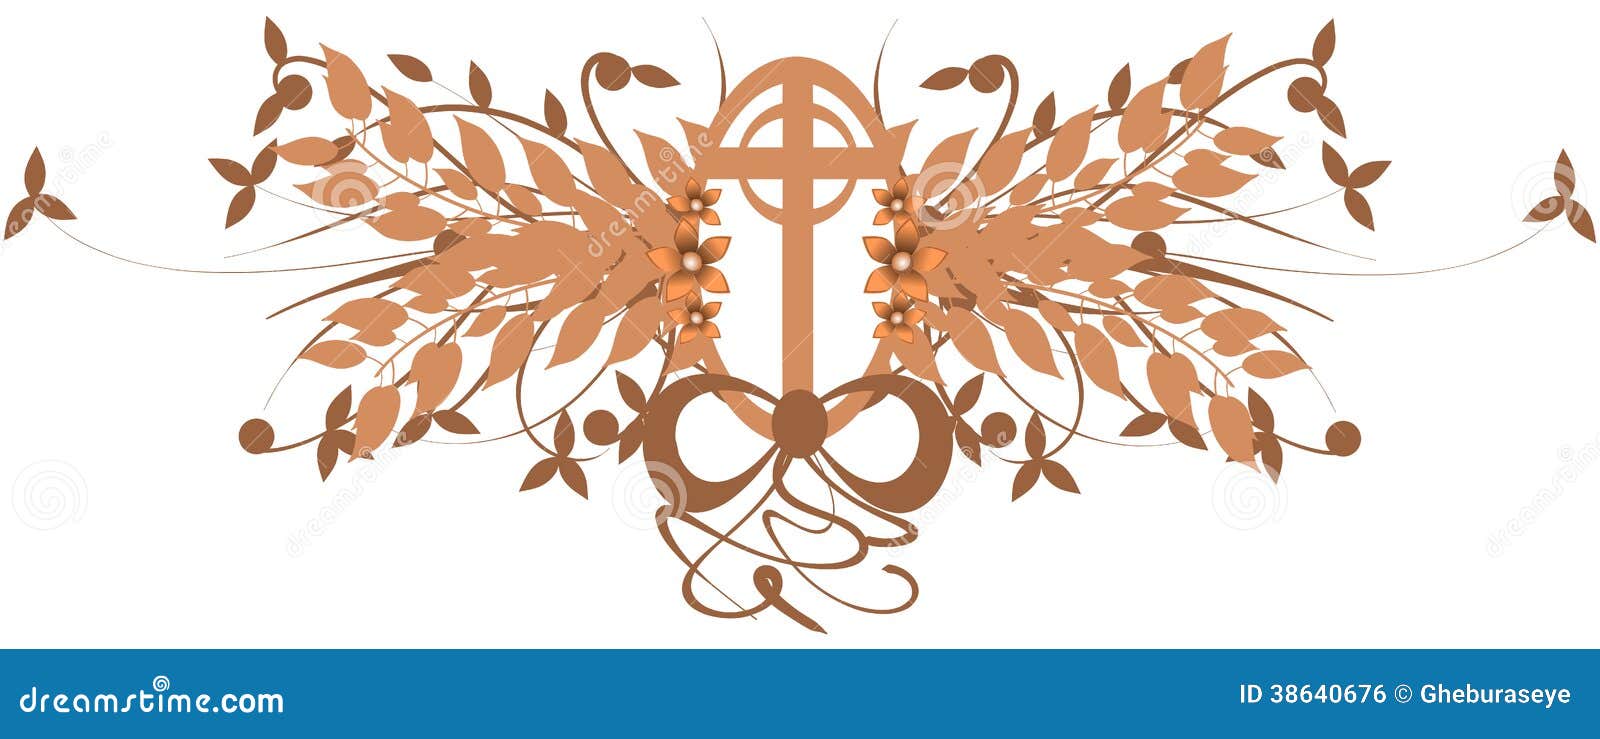 Avbilda föreställa ett dekorerat kors med blommor och sidor. ideal bild för projekt för påsknolla-klosterbroder.